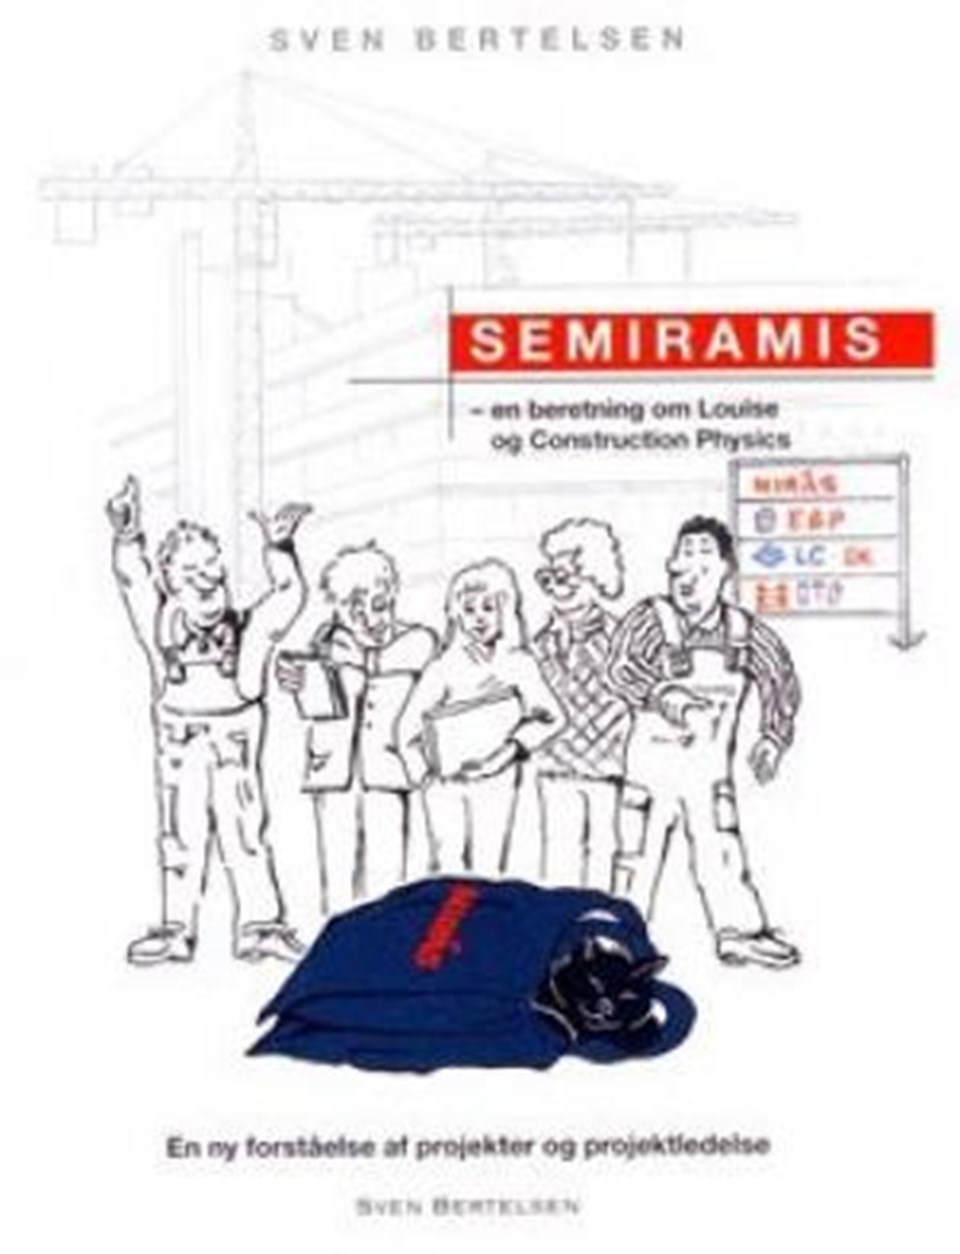 Semiramis - en beretning om Louise og Const. Phys.